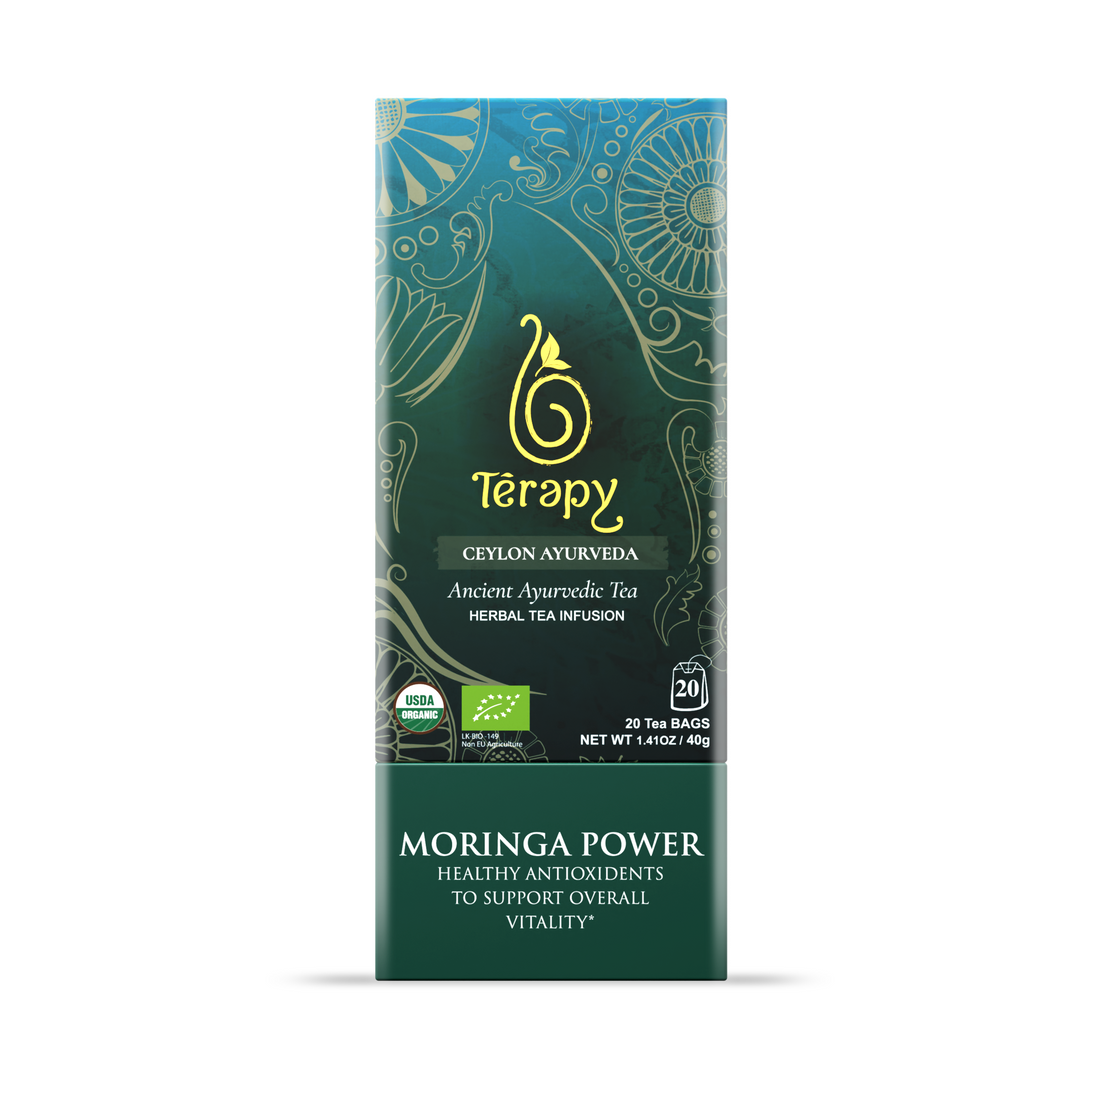 Moringa Power